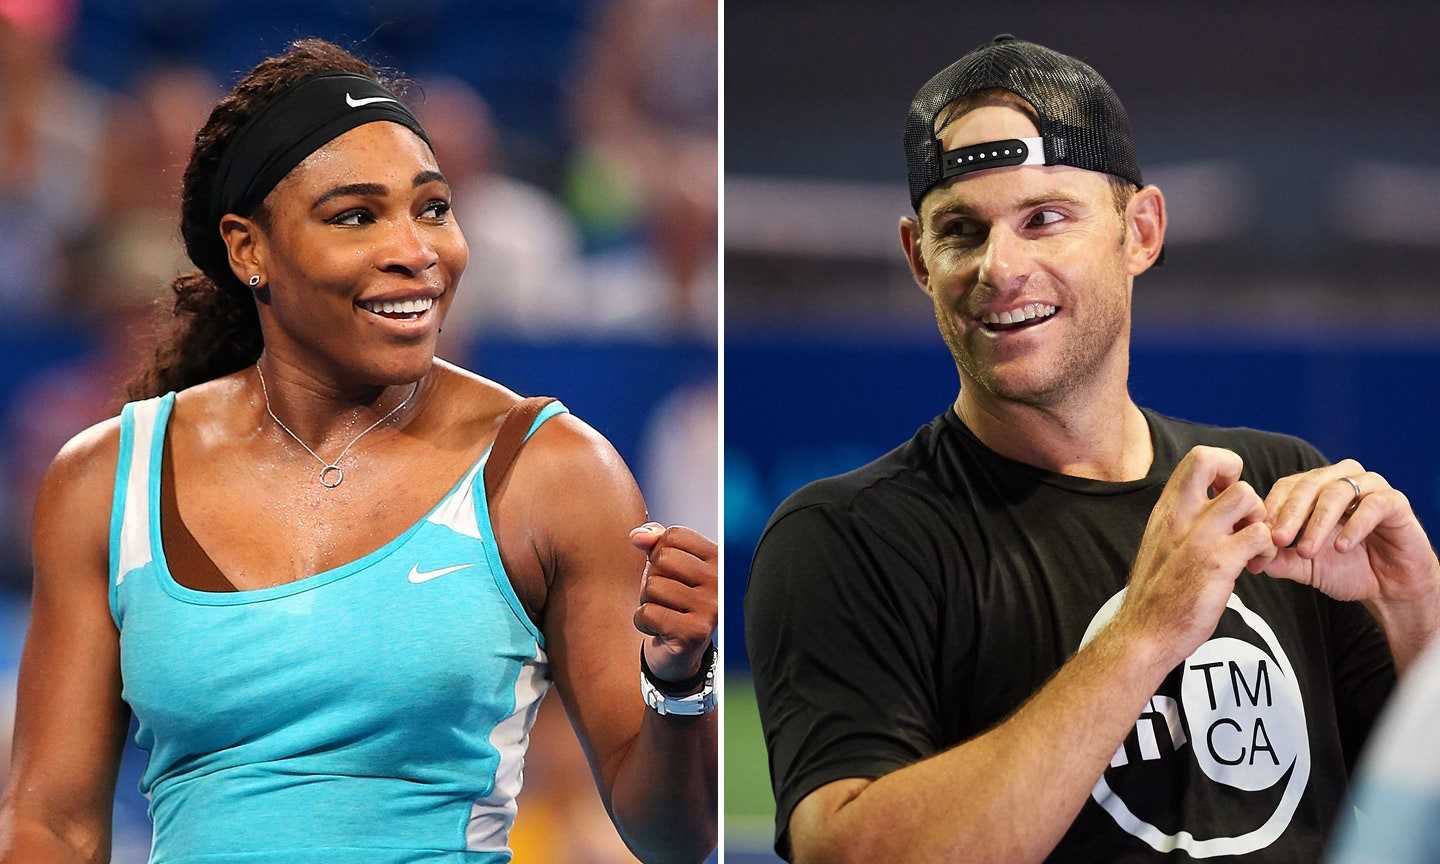 «Chaque fois que nous parlons, elle soulève cette question» - Andy Roddick se souvient d'avoir perdu un match contre Serena Williams